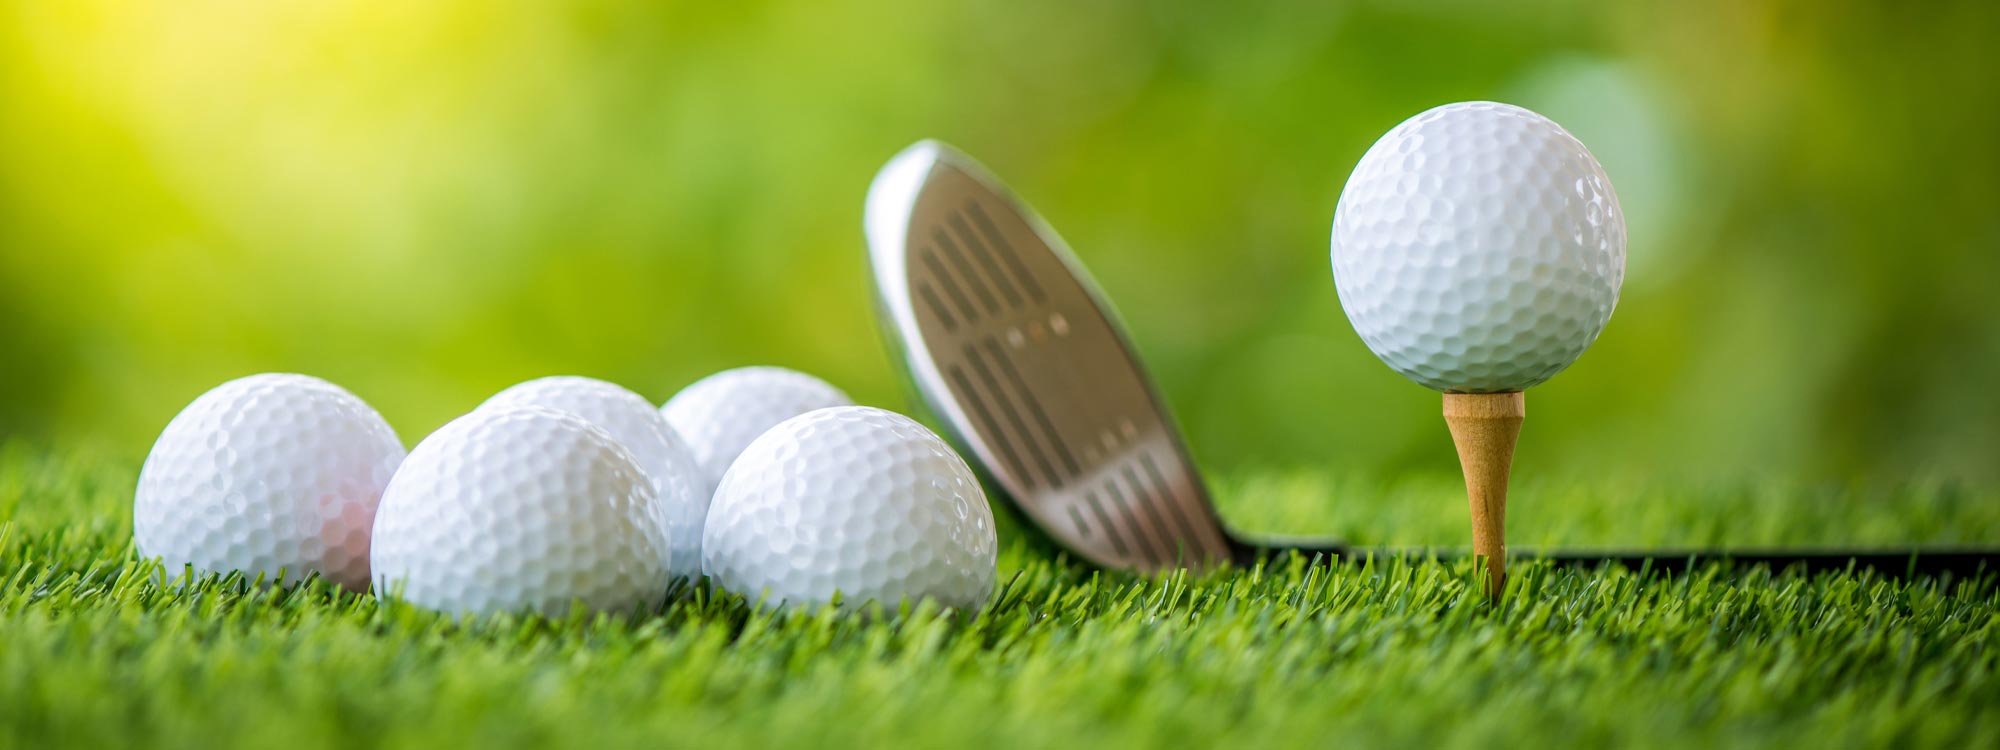 Golf Zubehör und Golf Accessoires